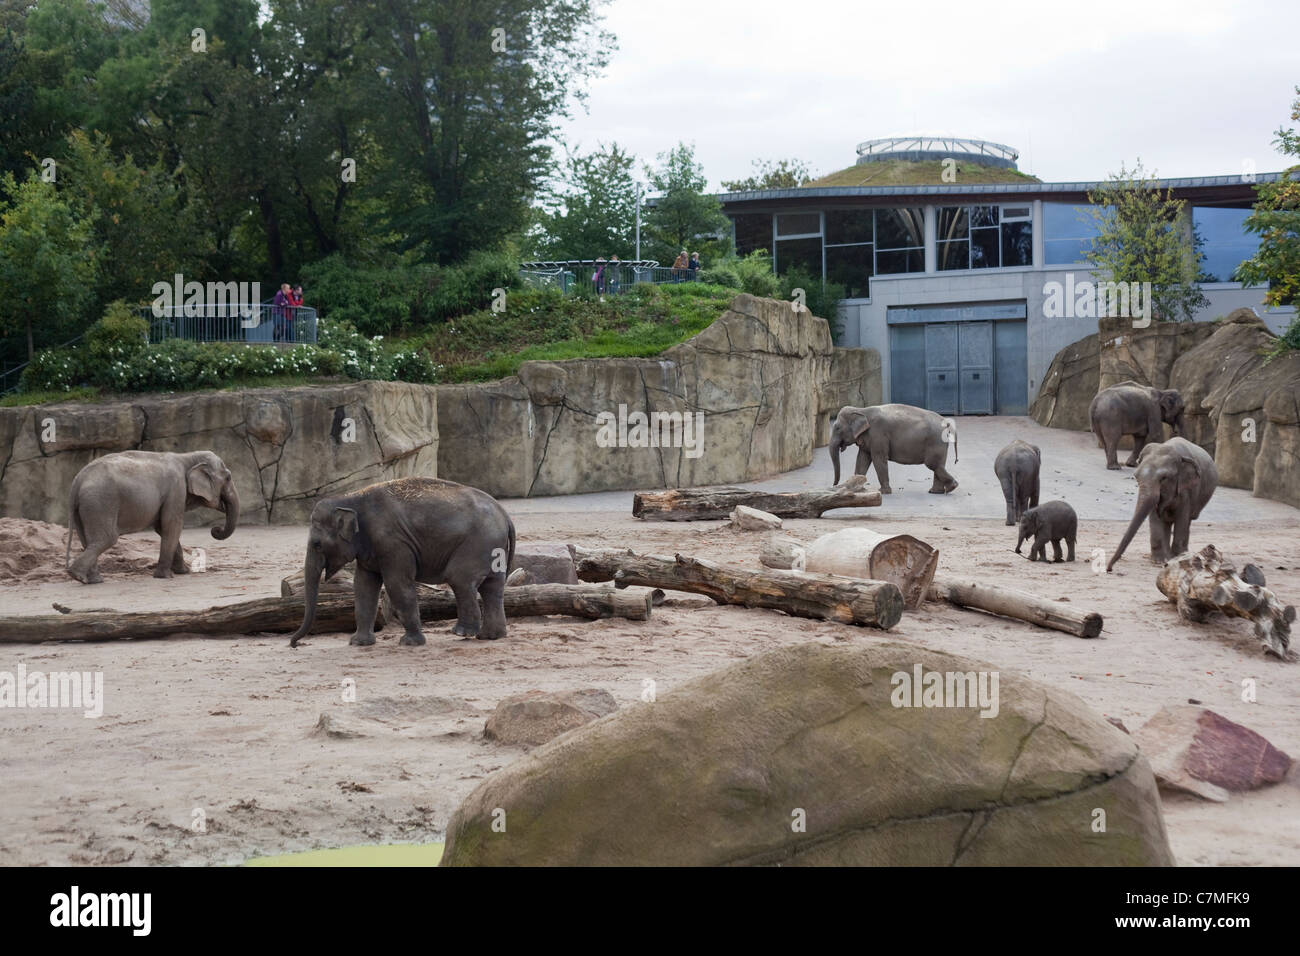 El elefante asiático (Elephas maximus). Casa y recinto ajardinado. Zoo de Colonia o Koln, Alemania. Foto de stock